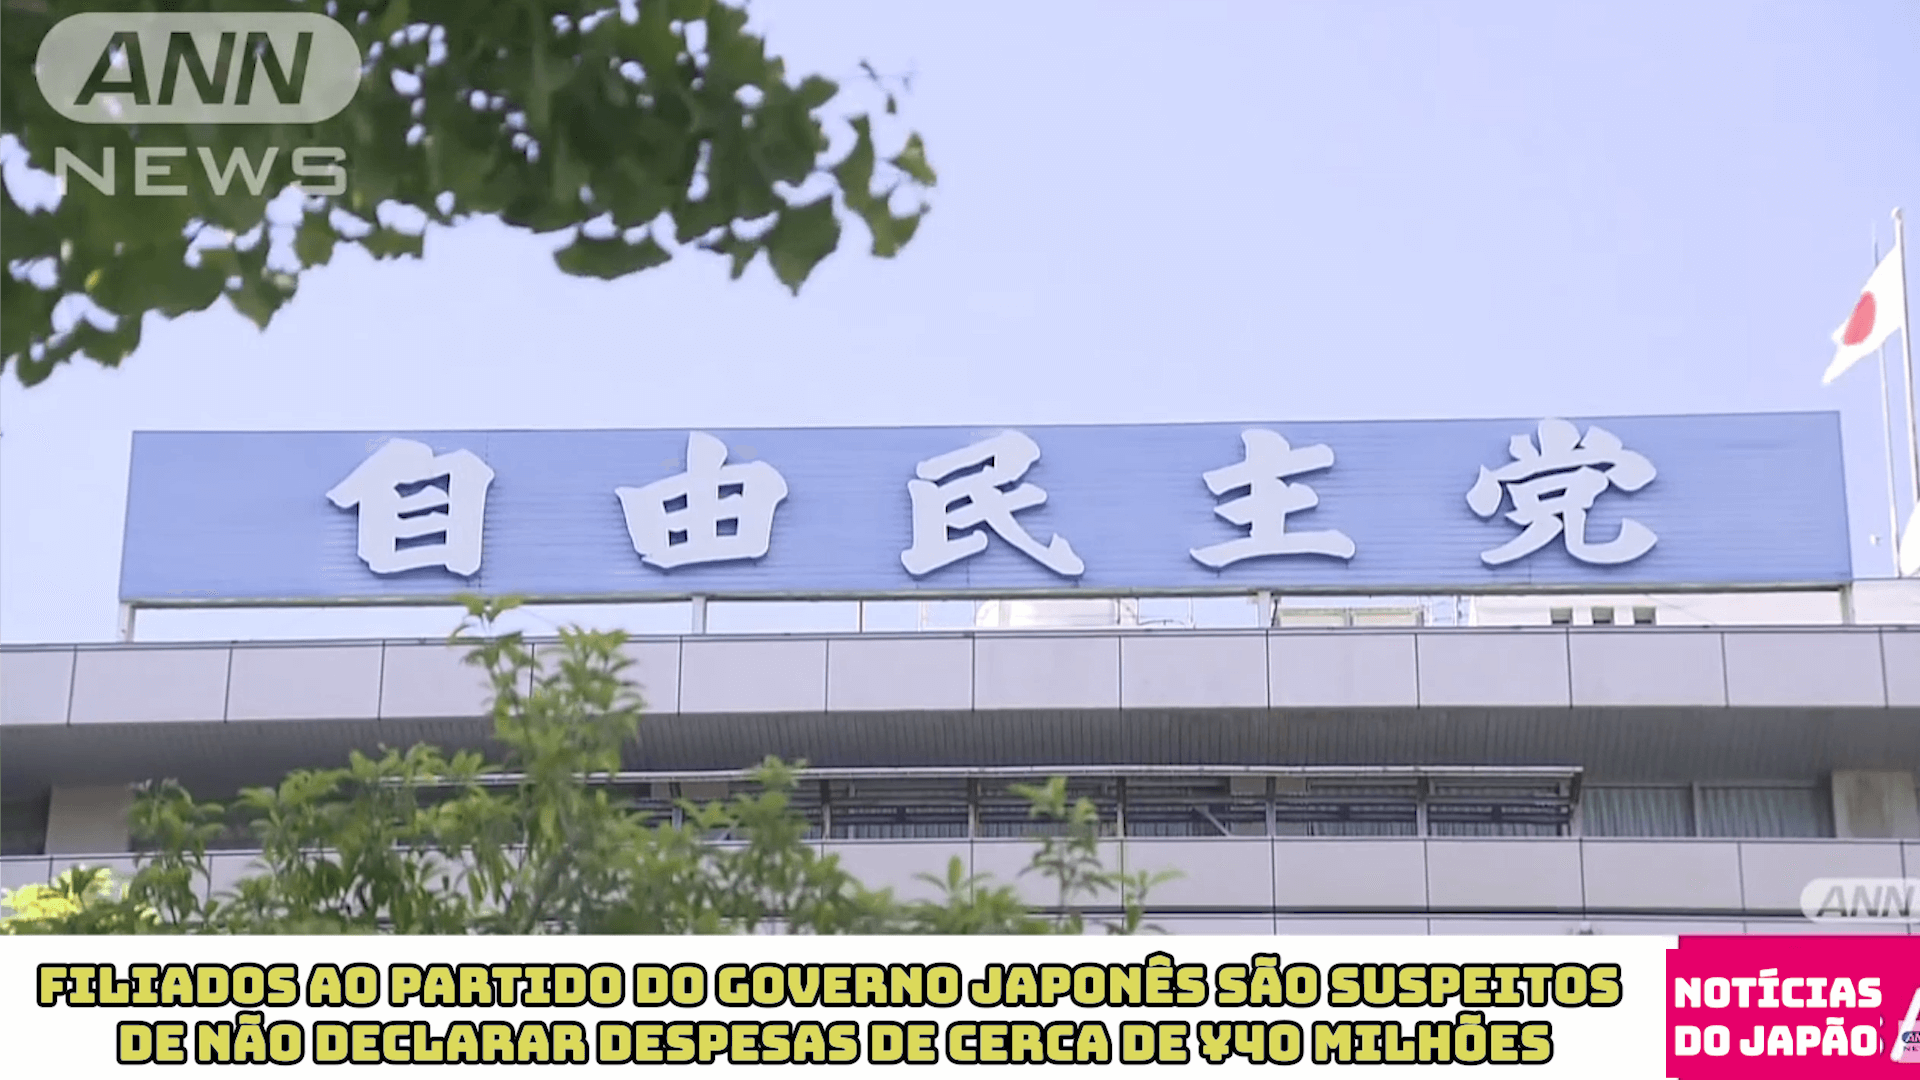 Filiados ao partido do governo japonês são suspeitos de não declarar despesas de cerca de 40 milhões de ienes